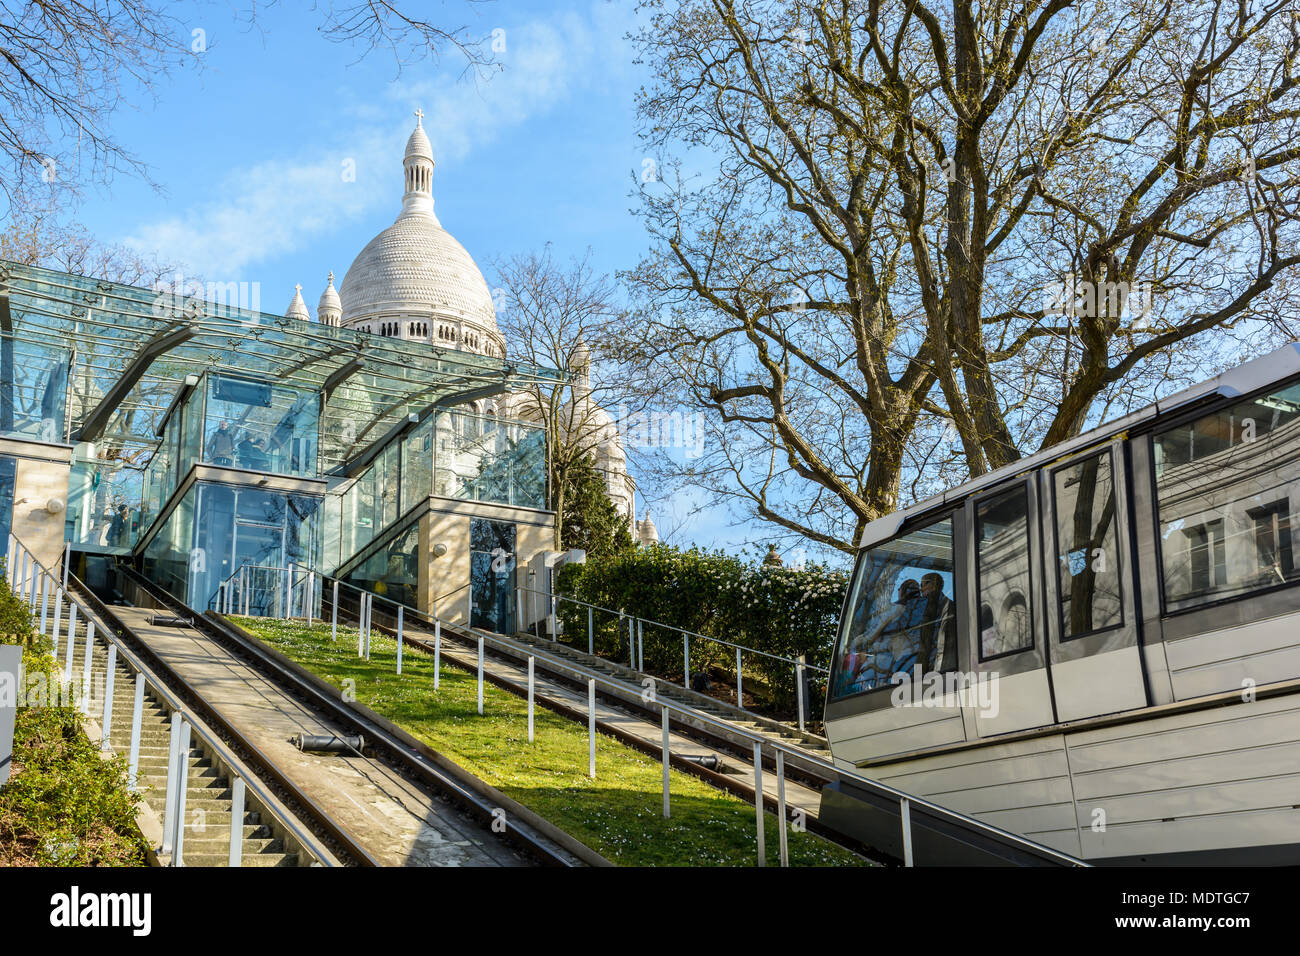 Le funiculaire de Montmartre, il est possible de monter la colline de la basilique du Sacré-Cœur en quelques secondes sans monter les 222 marches des escaliers. Banque D'Images